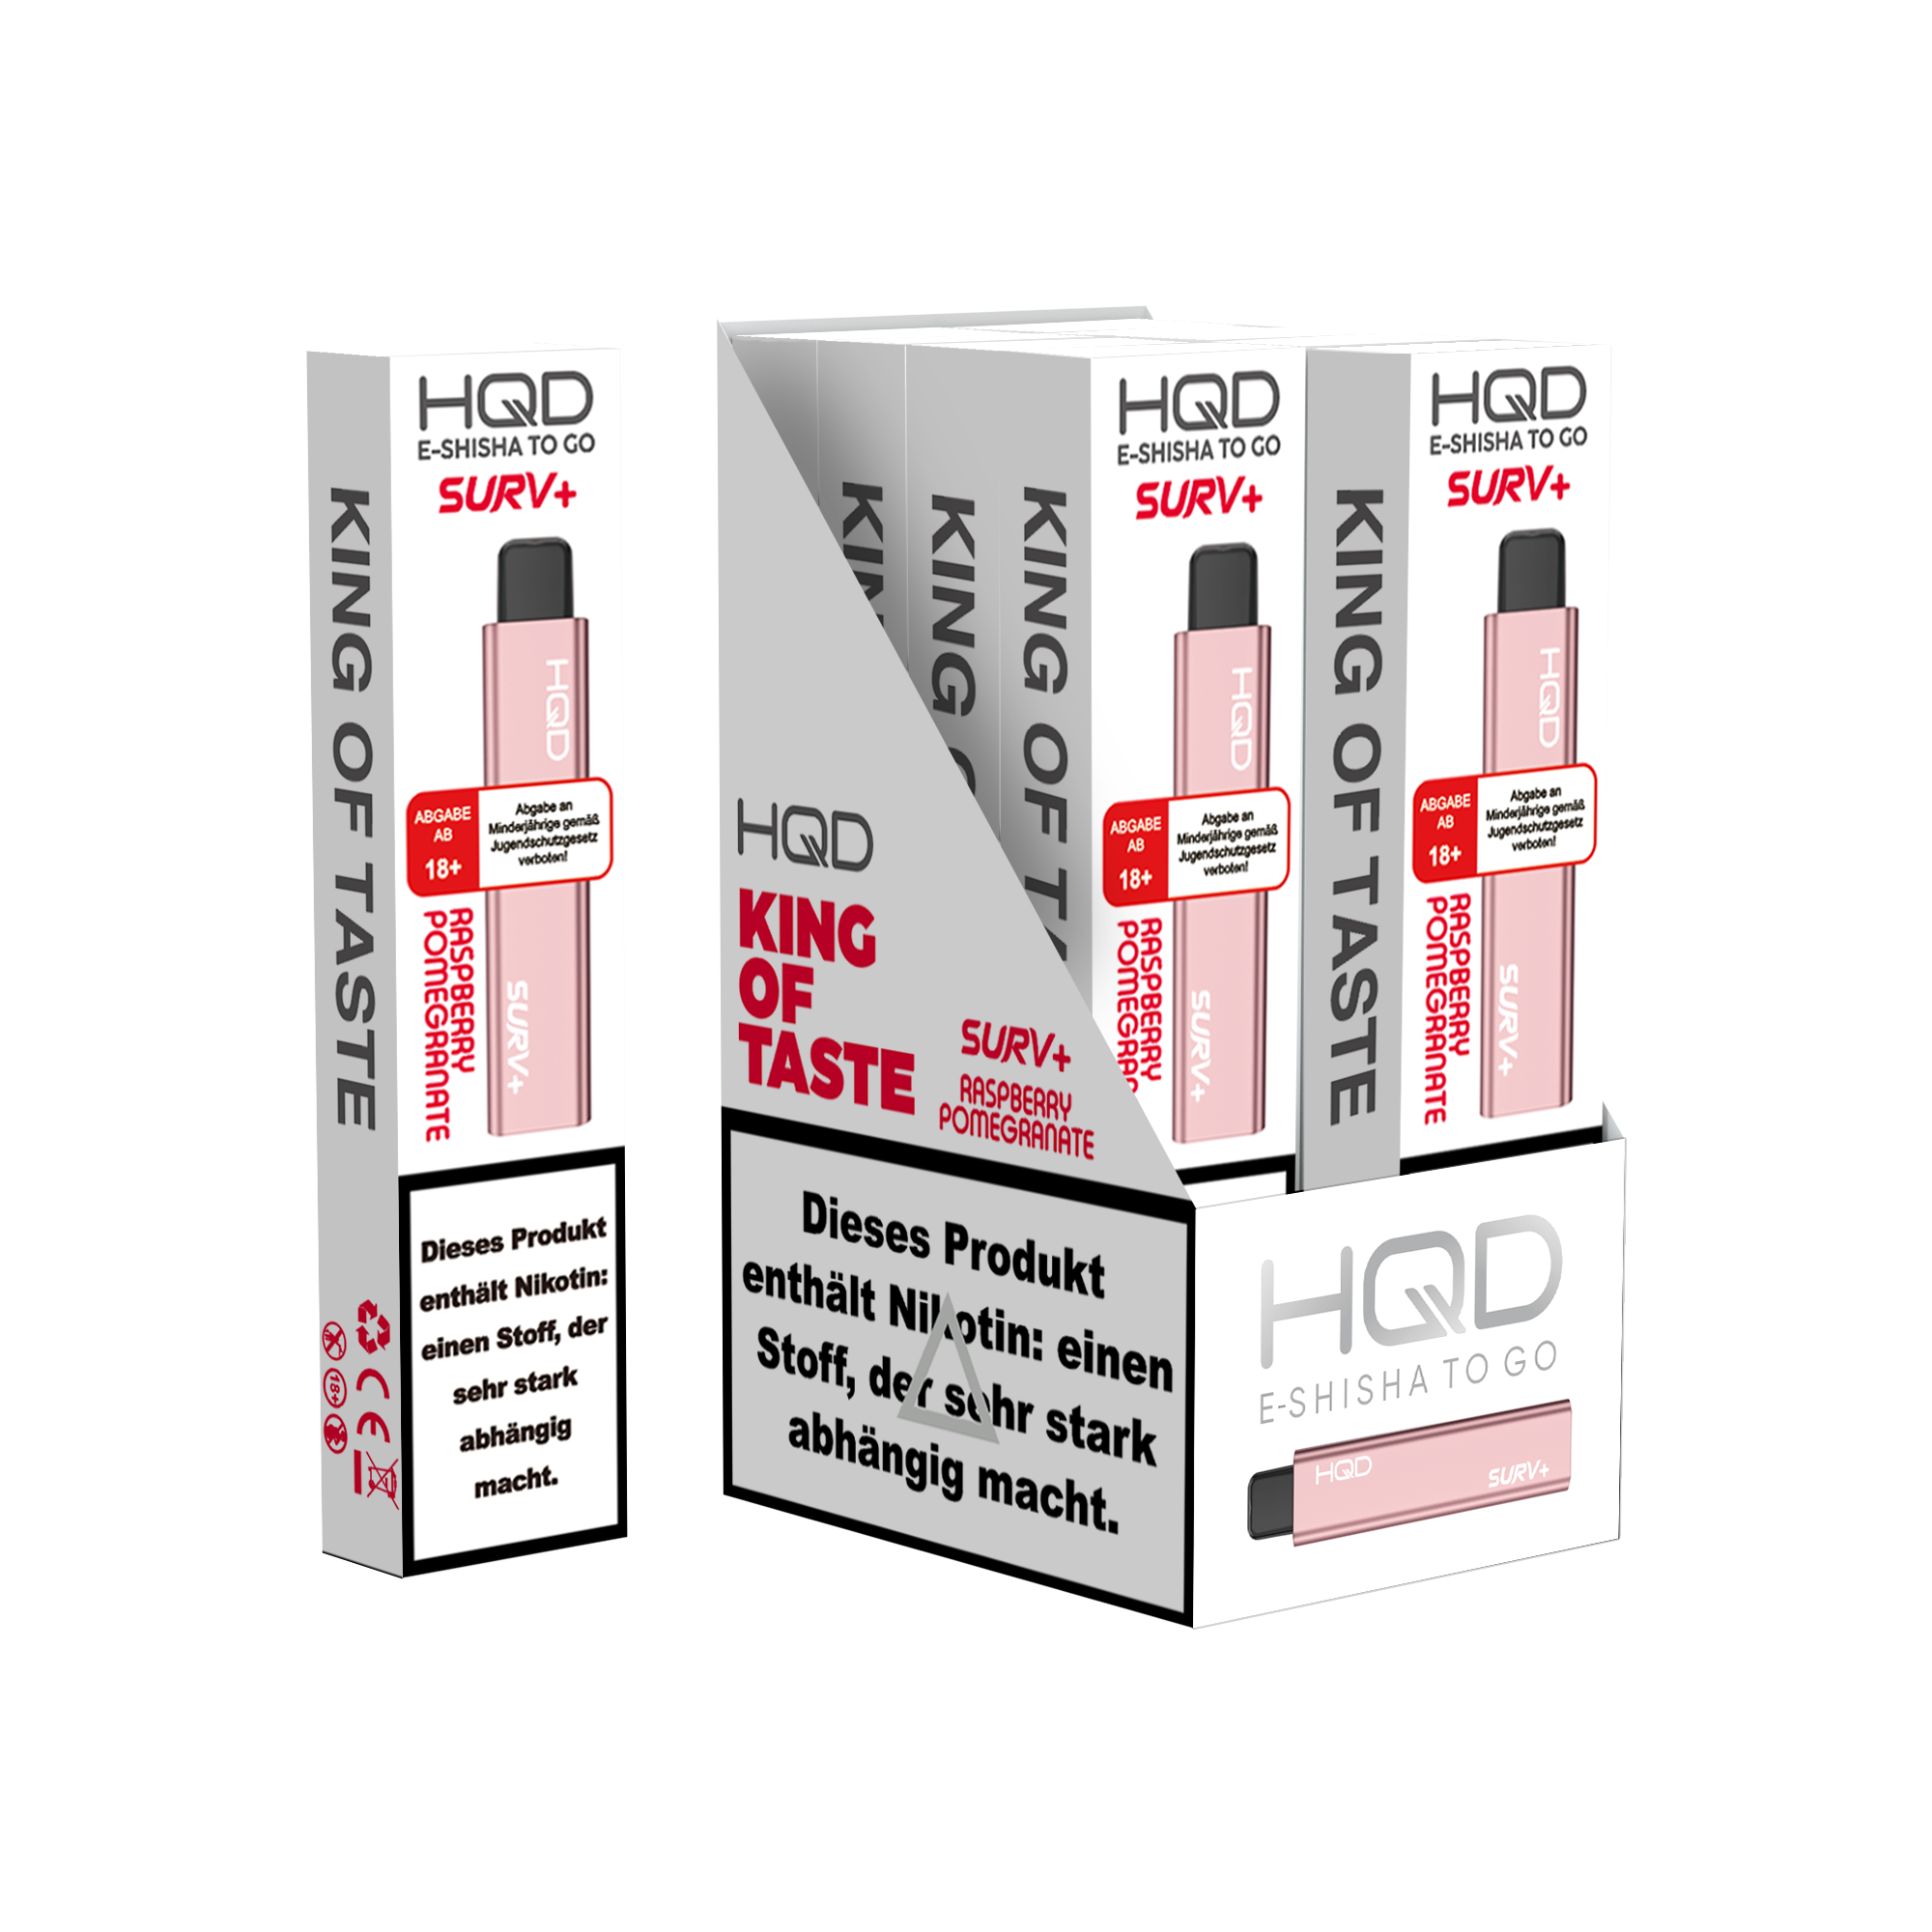 E-Zigarette HQD Surv+ RASPBERRY POMEGRANATE 18mg Nikotin 600